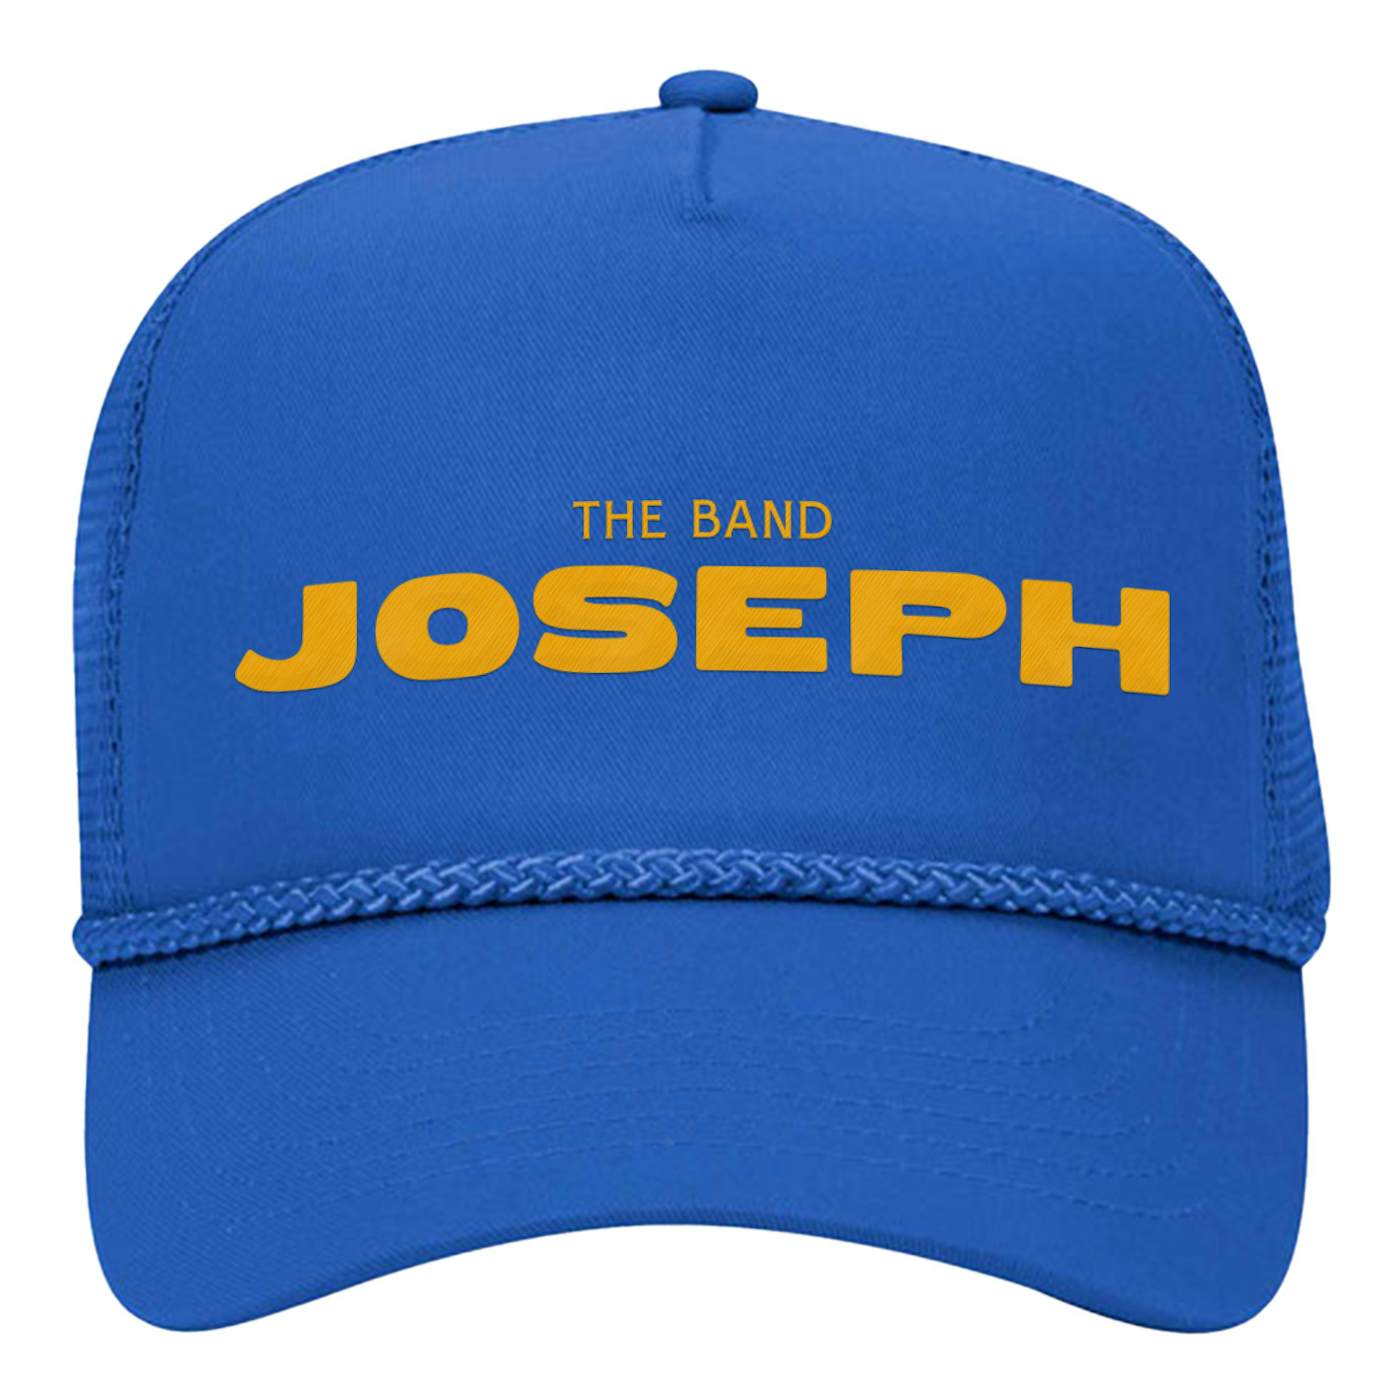 JOSEPH Rope Trucker Hat